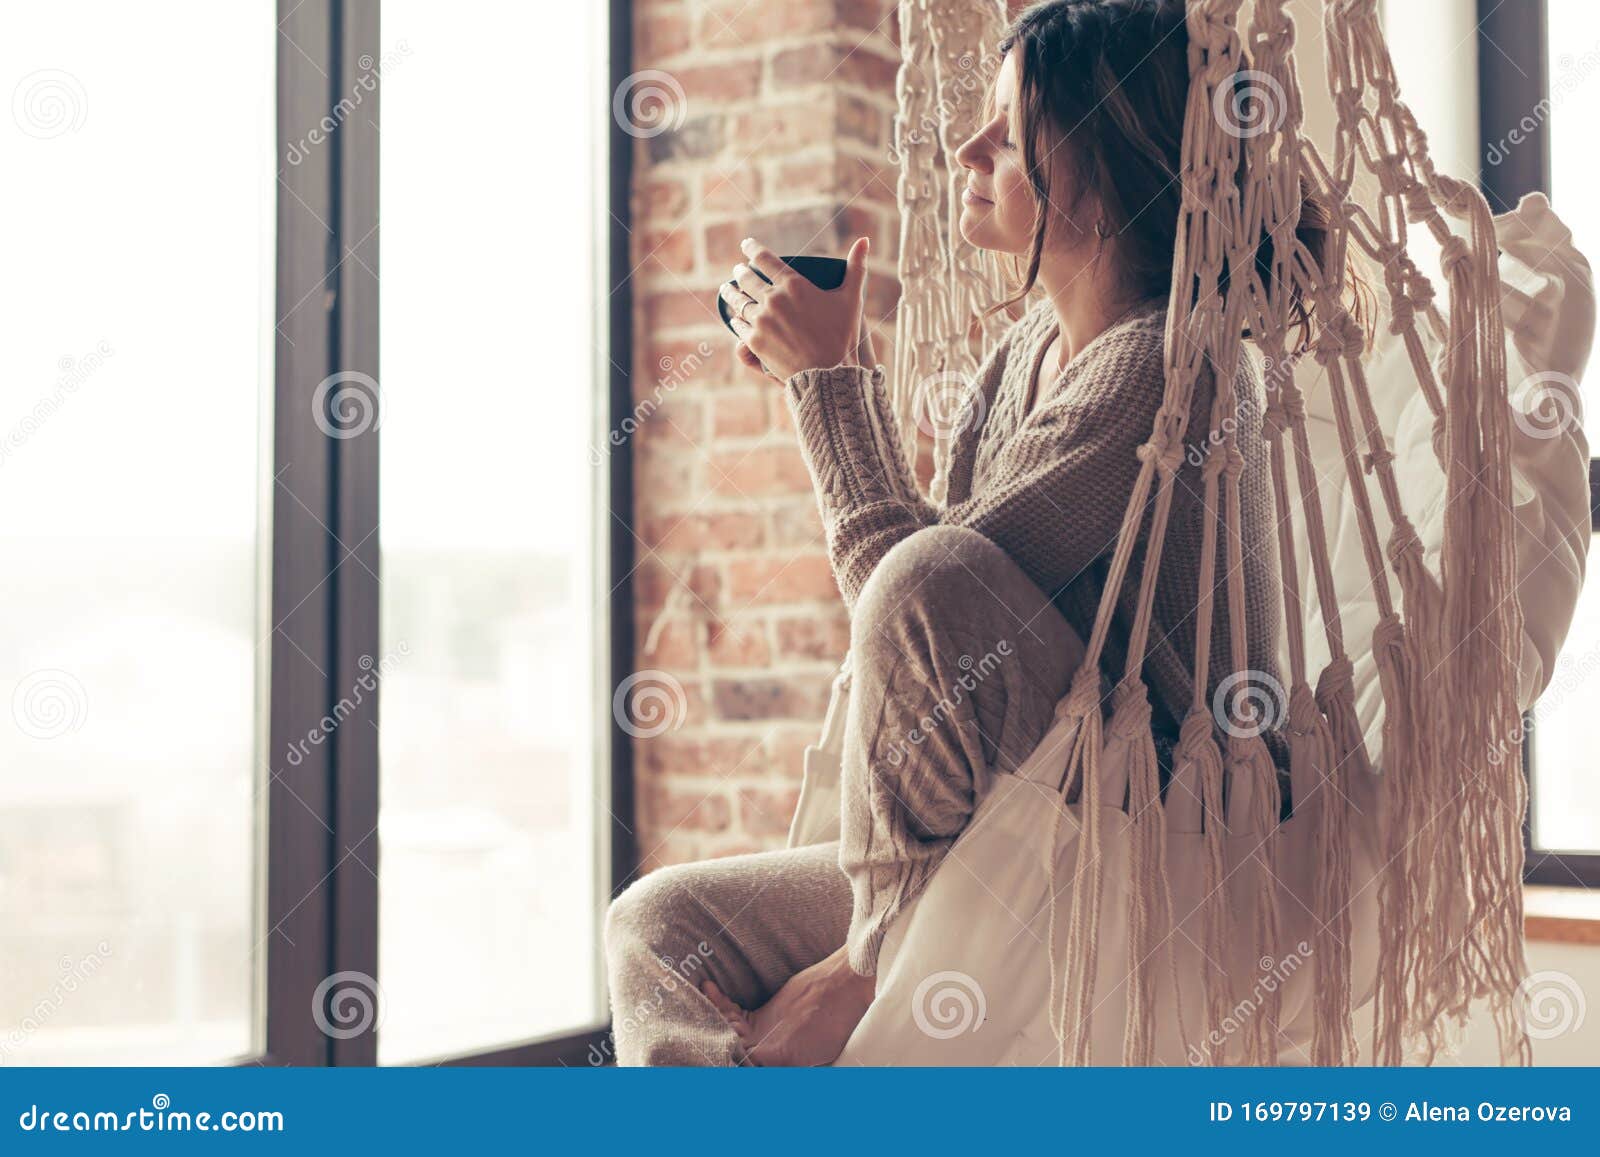 woman wearing cashmere nightwear relaxing in cabin